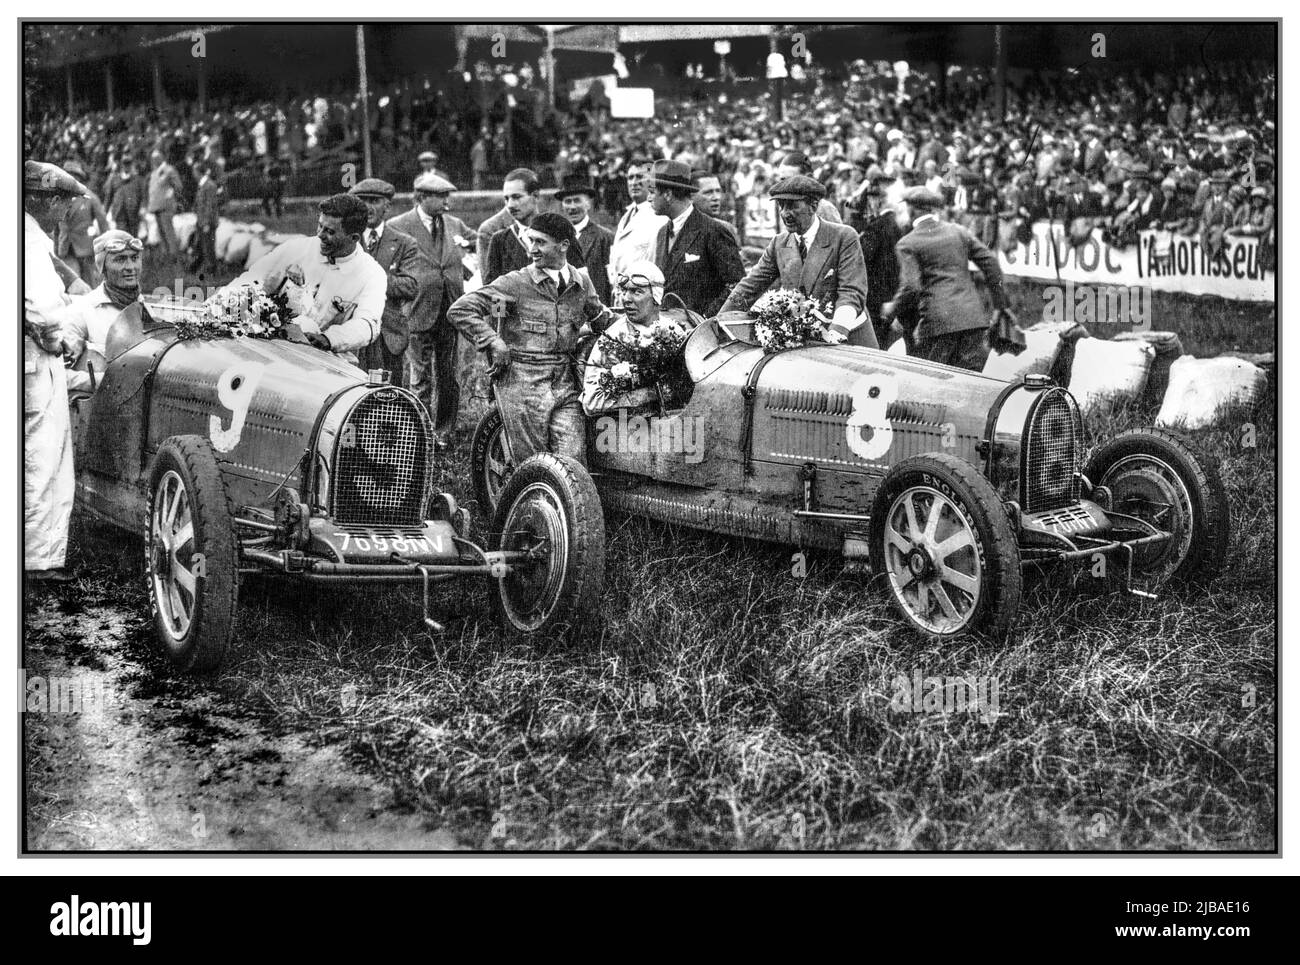 Vintage 1930 vincitori del Gran Premio del Belgio (a sinistra) Louis Chiron primo in numero 9 Bugatti e Guy Bouriat secondo in vettura numero 8., la gara, nota anche come VII Gran Premio d'Europa, è stata una gara automobilistica Grand Prix tenutasi a Spa-Francorchamps il 20 luglio 1930. La gara si è svolta su 40 giri di un circuito di 14,914 km per una distanza totale di 596,560 km ed è stata vinta da Louis Chiron alla guida di un Bugatti. Foto Stock